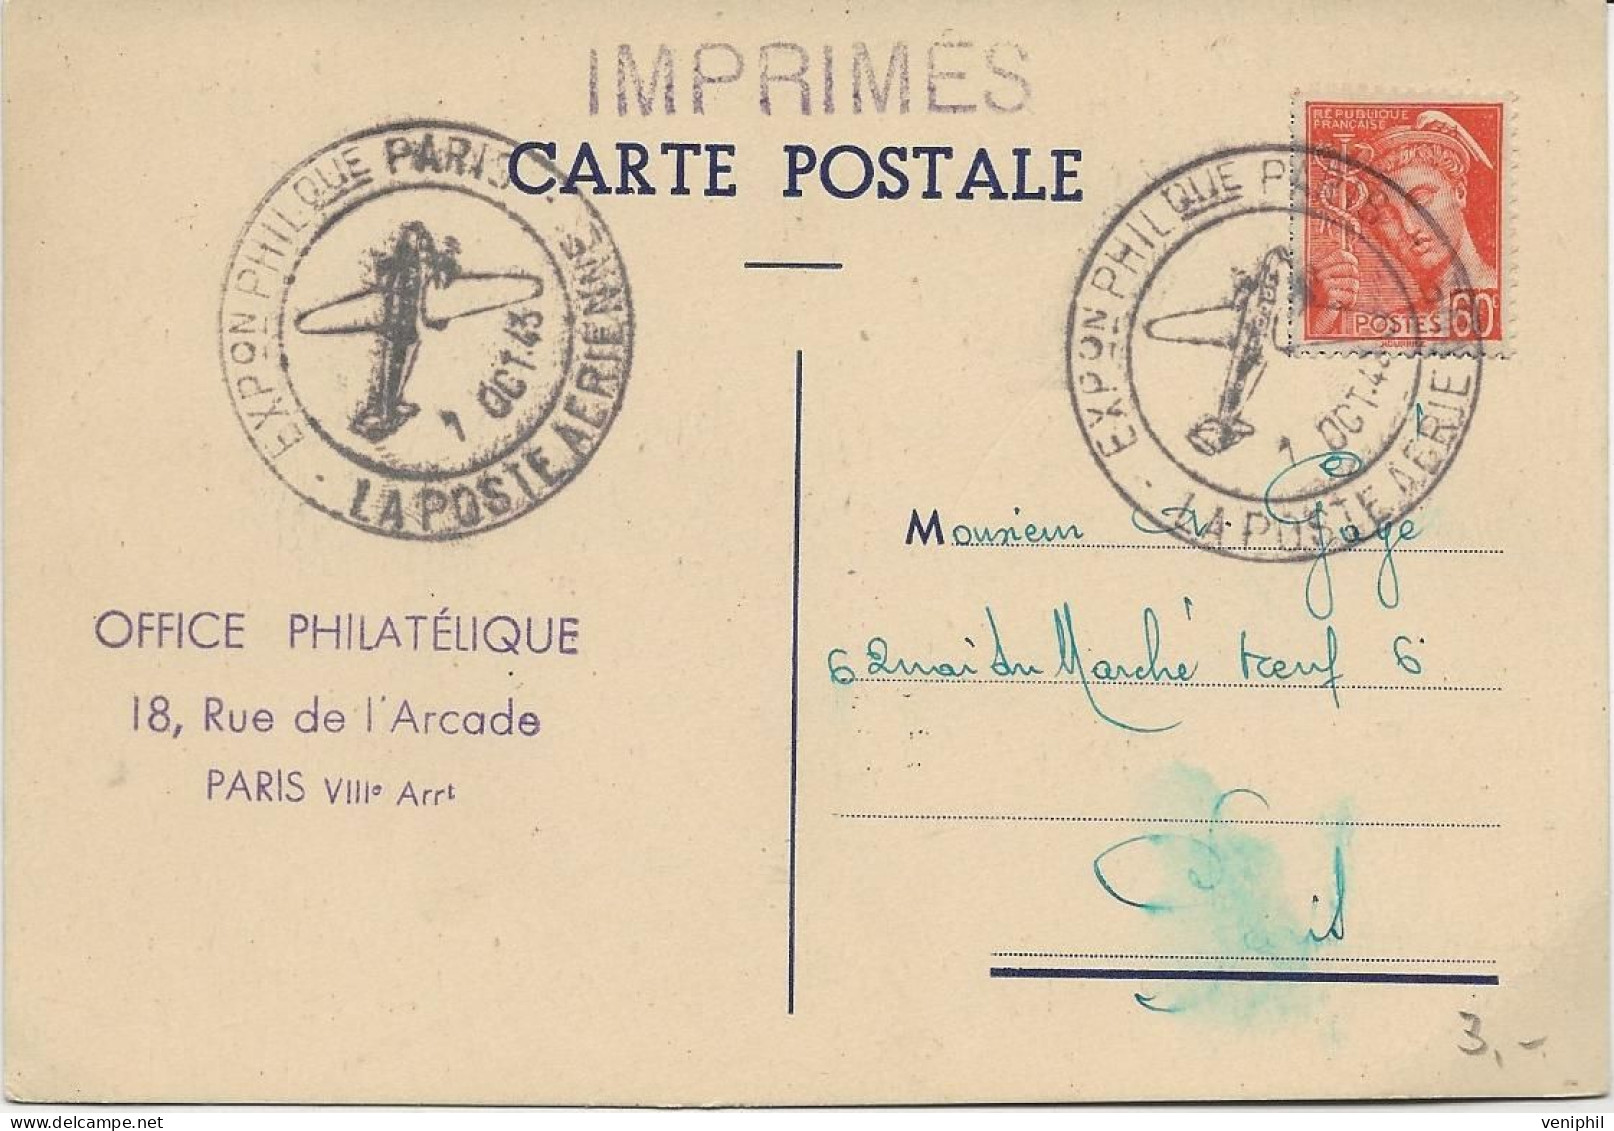 CARTE AFFRANCHIE TIPE MERCURE N° 415 OBLITERATION ILLUSTREE LA POSTE AERIENNE -EXPO PHILATELIQUE PARIS - 1943 - Commemorative Postmarks